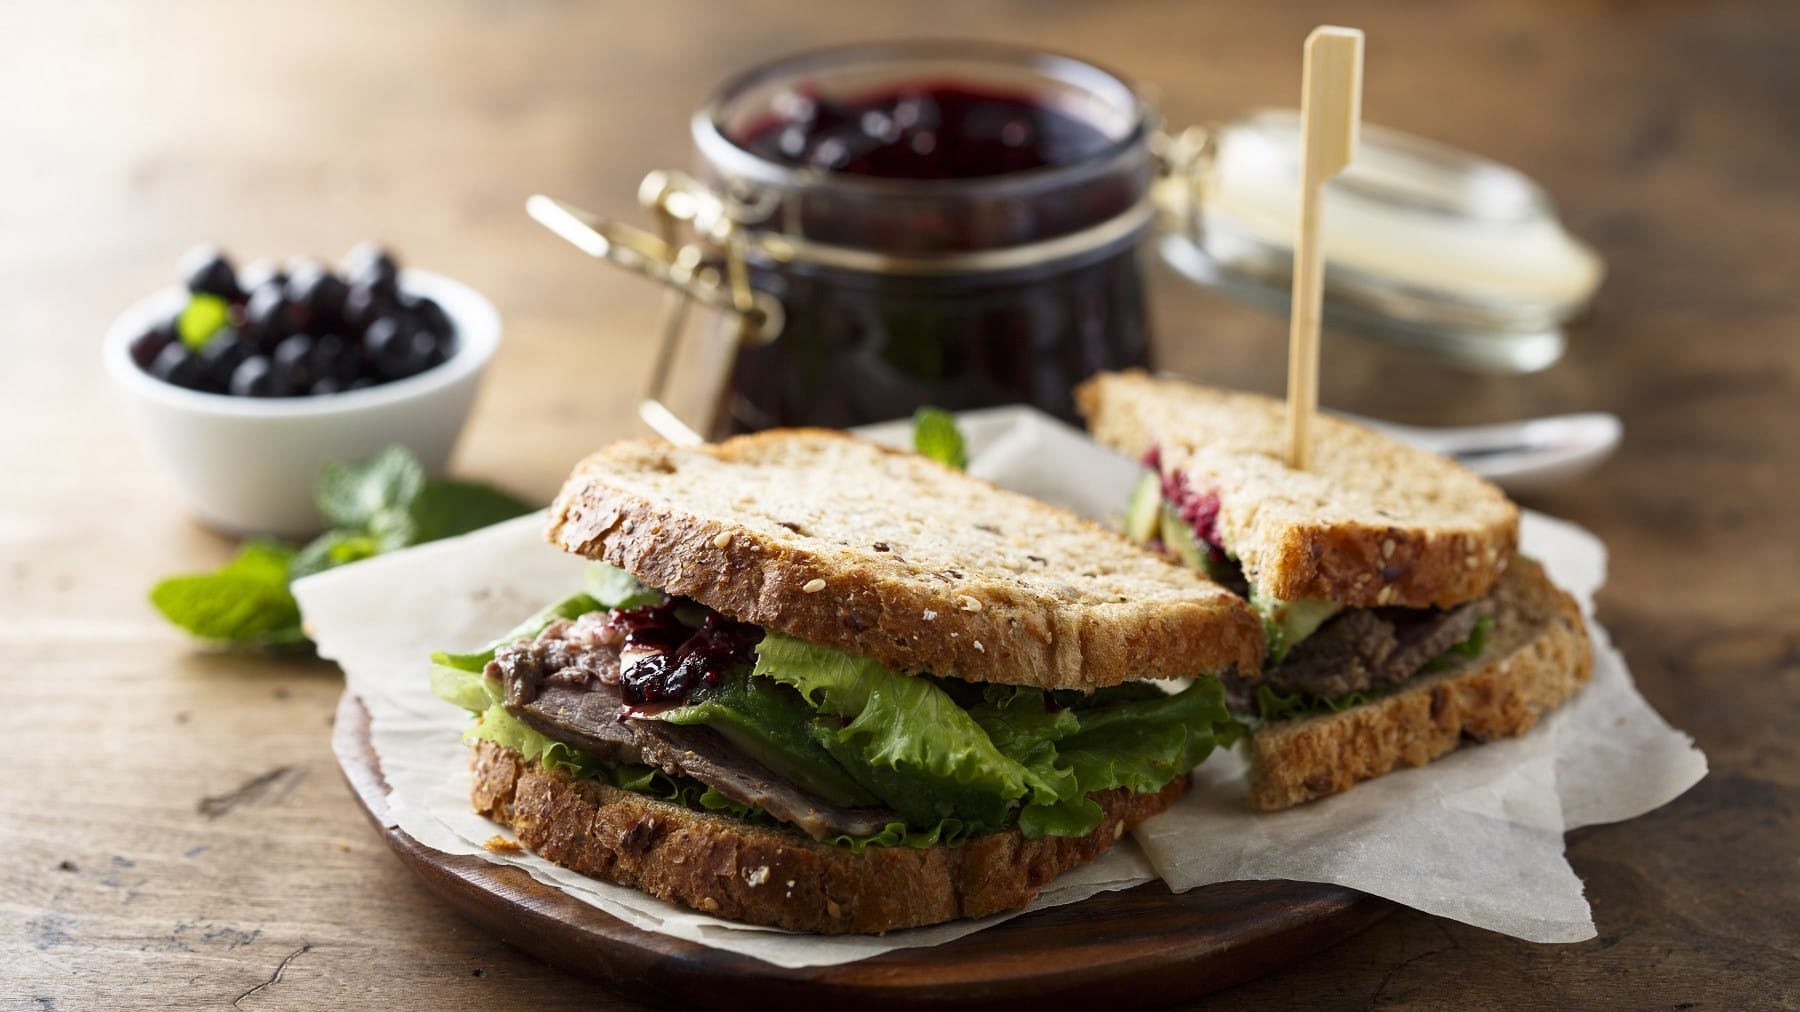 Roastbeef-Sandwich mit Heidebeermarmelade und knackigem Salat, aufgeschnitten serviert auf einem Teller mit noch mehr Marmelade auf einem Holztisch.